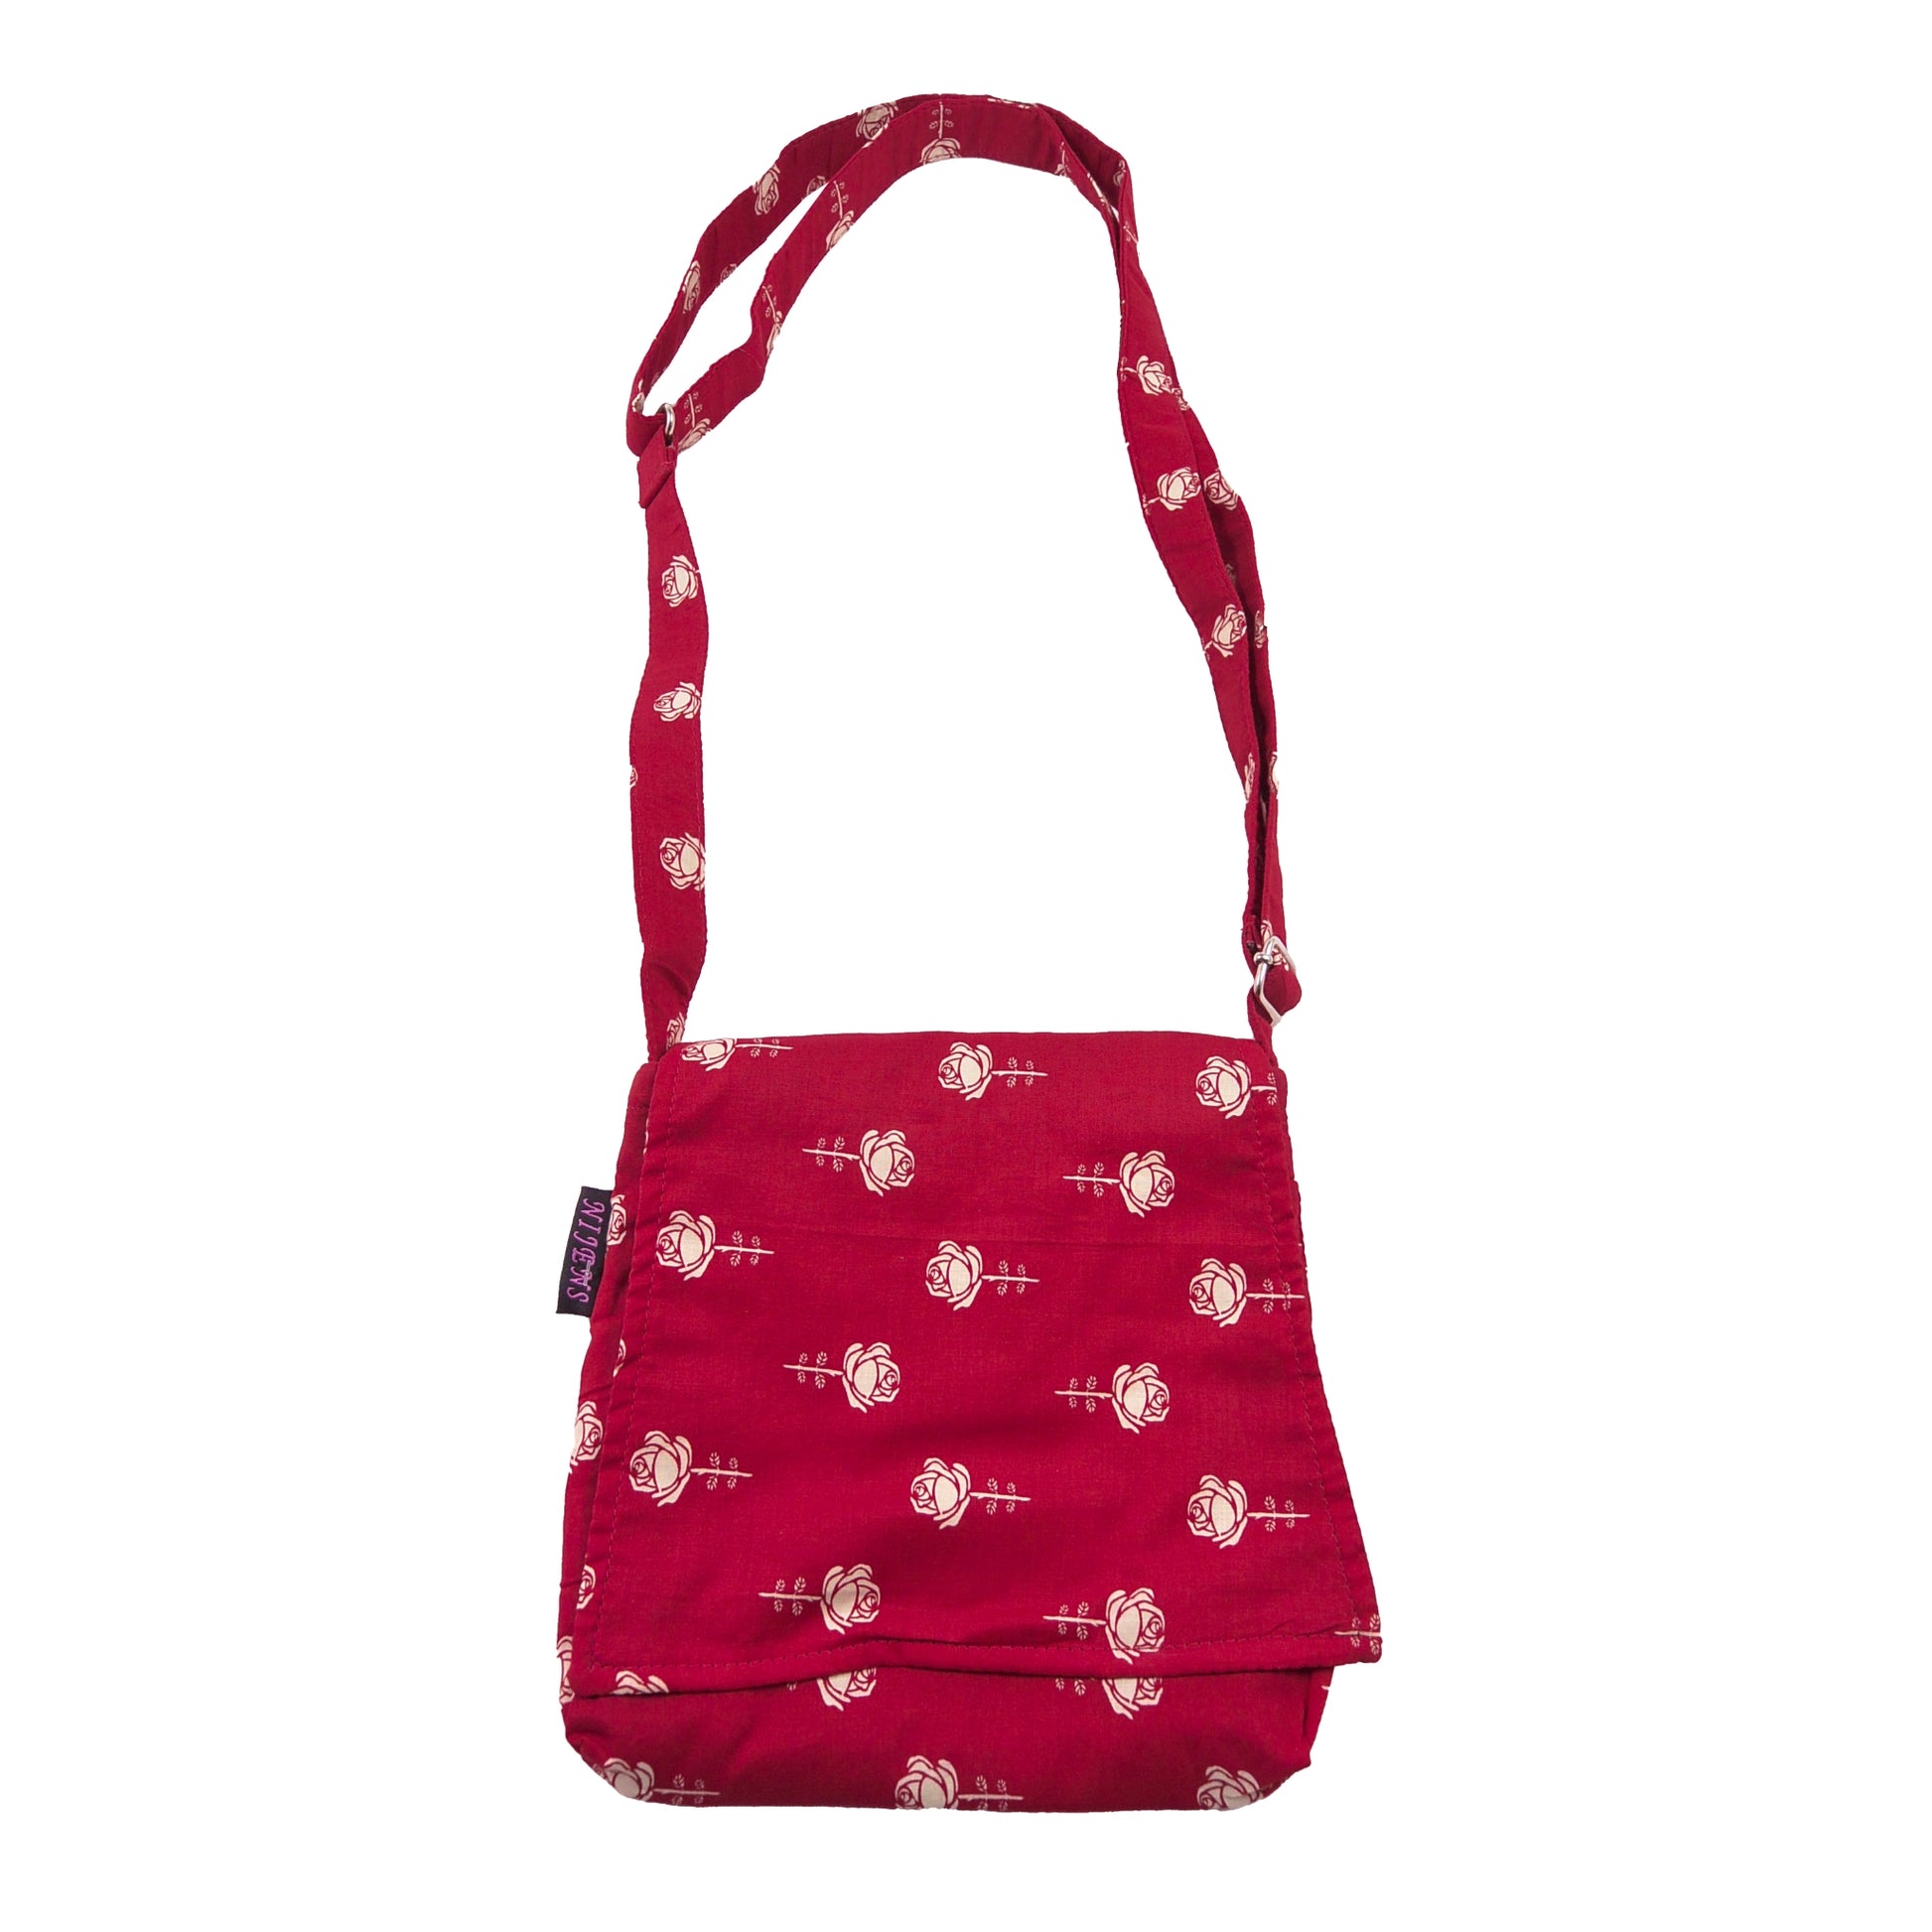 Kleine Tasche – Umhängetasche aus Baumwolle, rot mit weißem Rosenmotiv. Ein Hauptfach mit Einsteckfach und jeweils ein Reißverschlussfach vorne und hinten. Der Tragegurt ist stufenlos verstellbar.